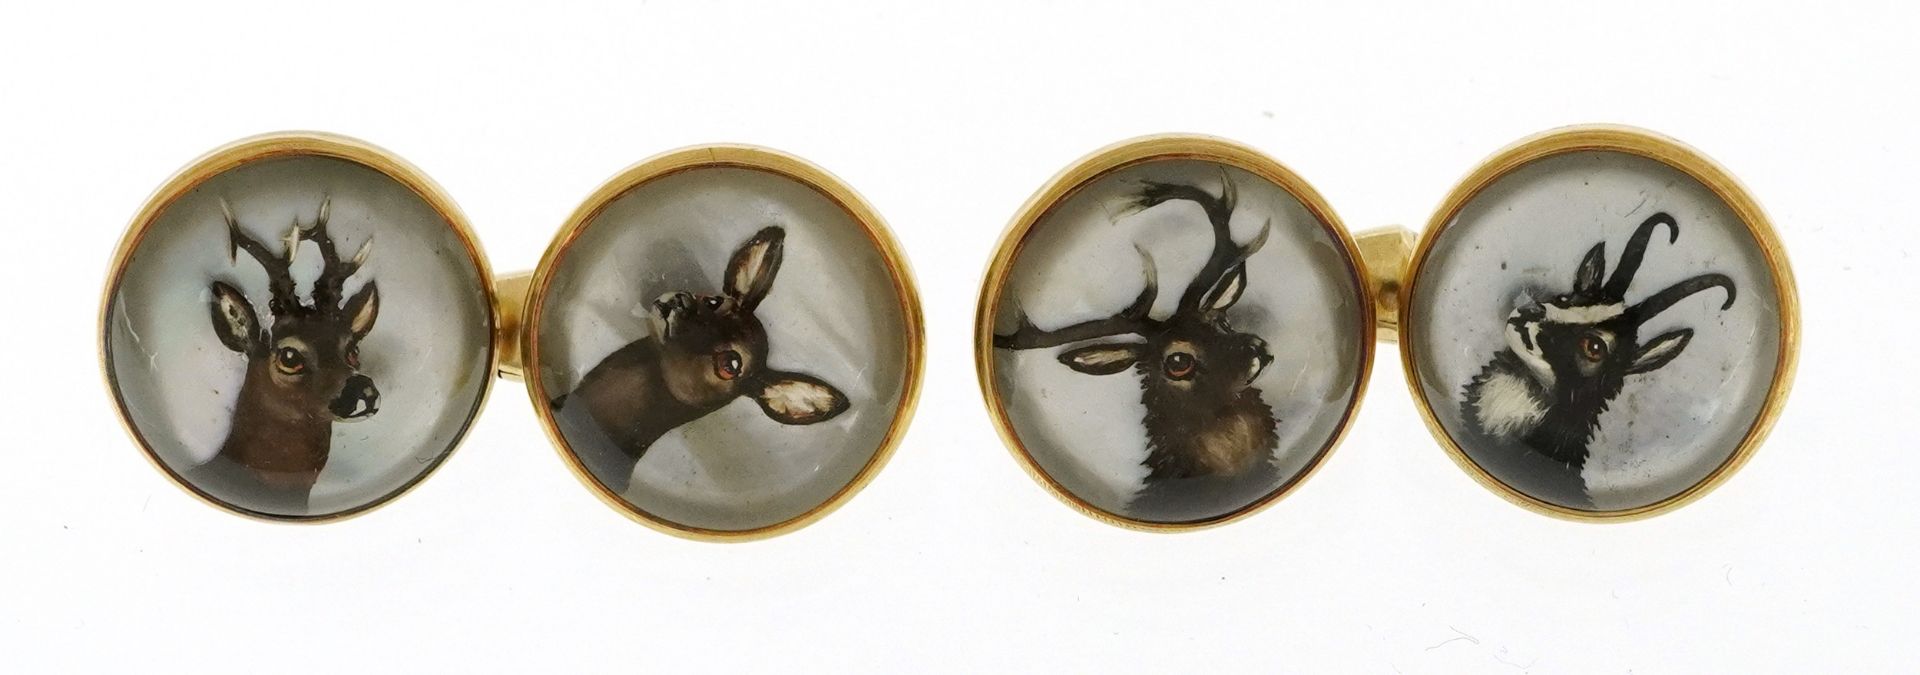 Pair of 14ct gold Essex Crystal deer cufflinks housed in a fitted velvet box, 1.4cm in diameter,